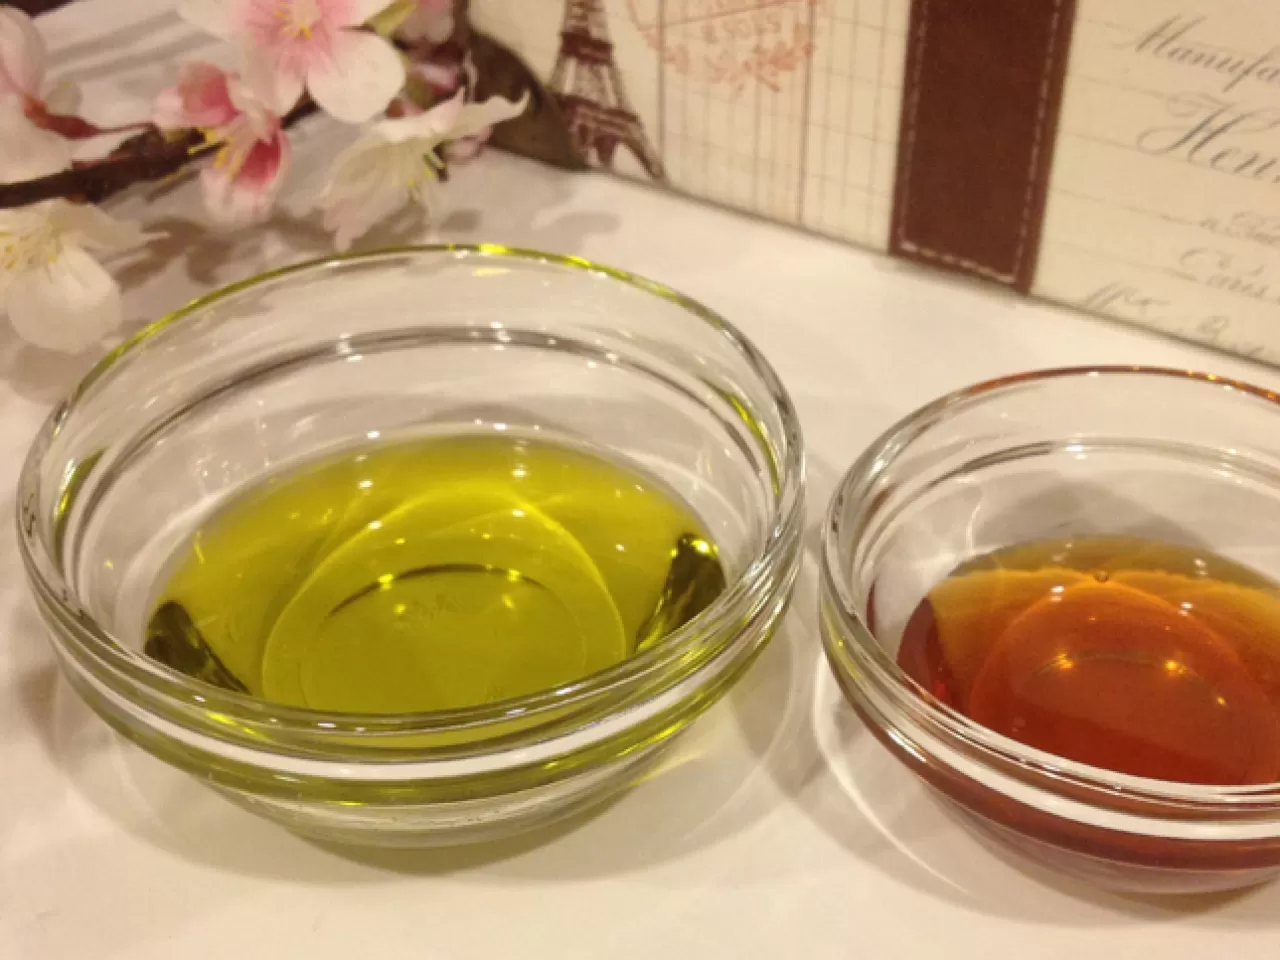 Маска оливковое масло мед. Olive Oil маска для волос. Оливковое масло и мед. Маска из меда оливкового масла. Маска для волос с медом и оливковым маслом.